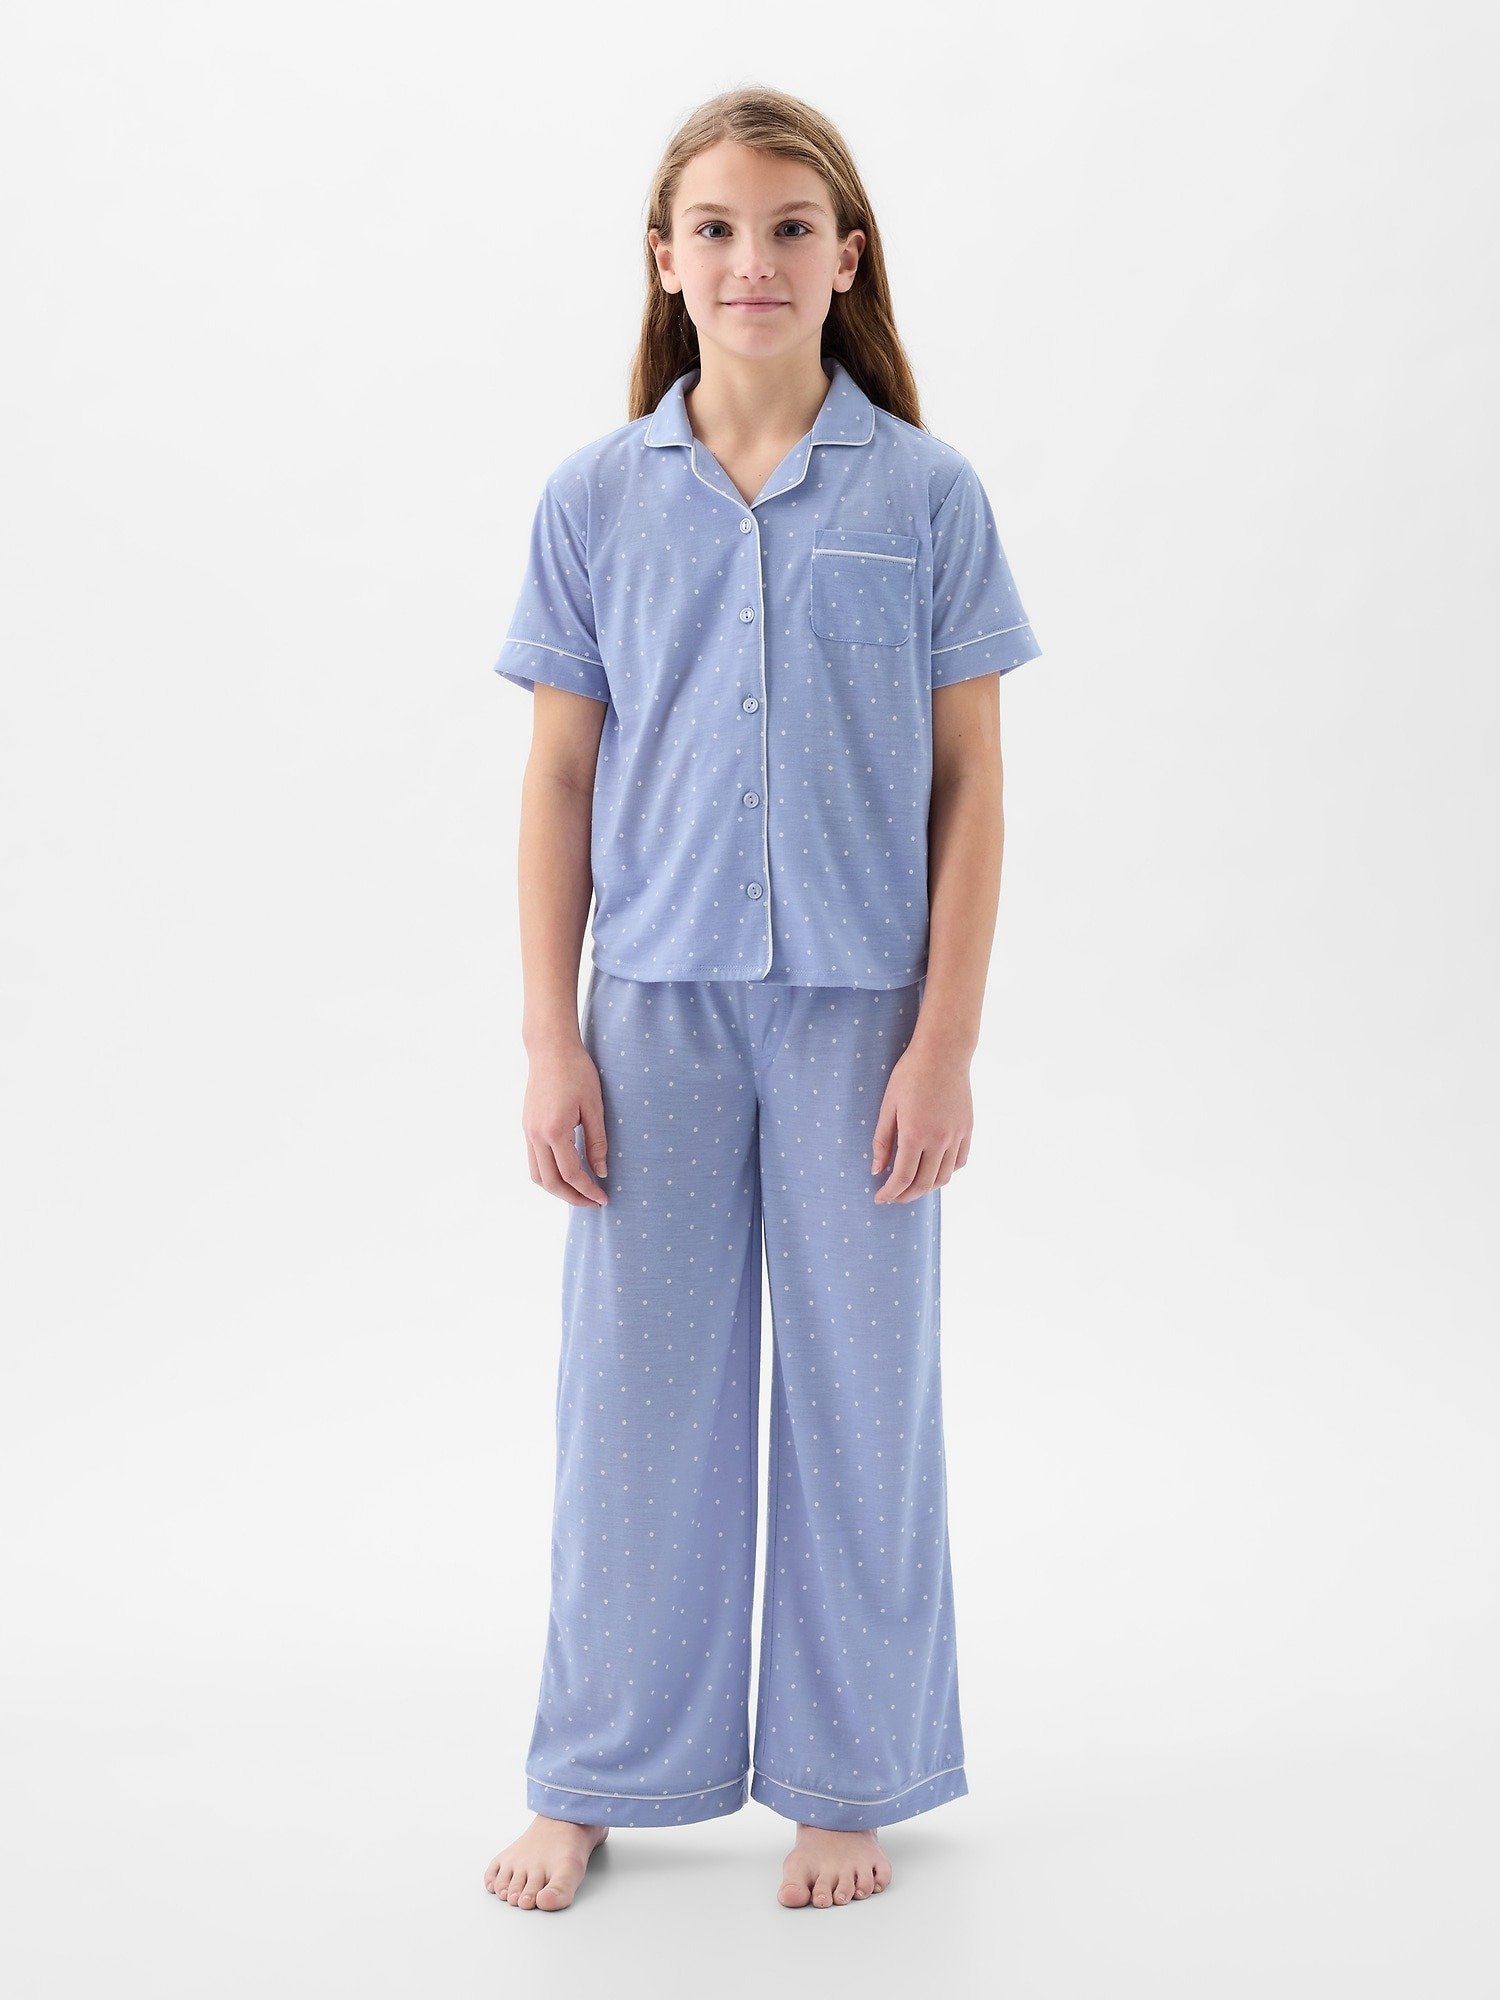 Geri Dönüştürülmüş Pijama Takımı product image